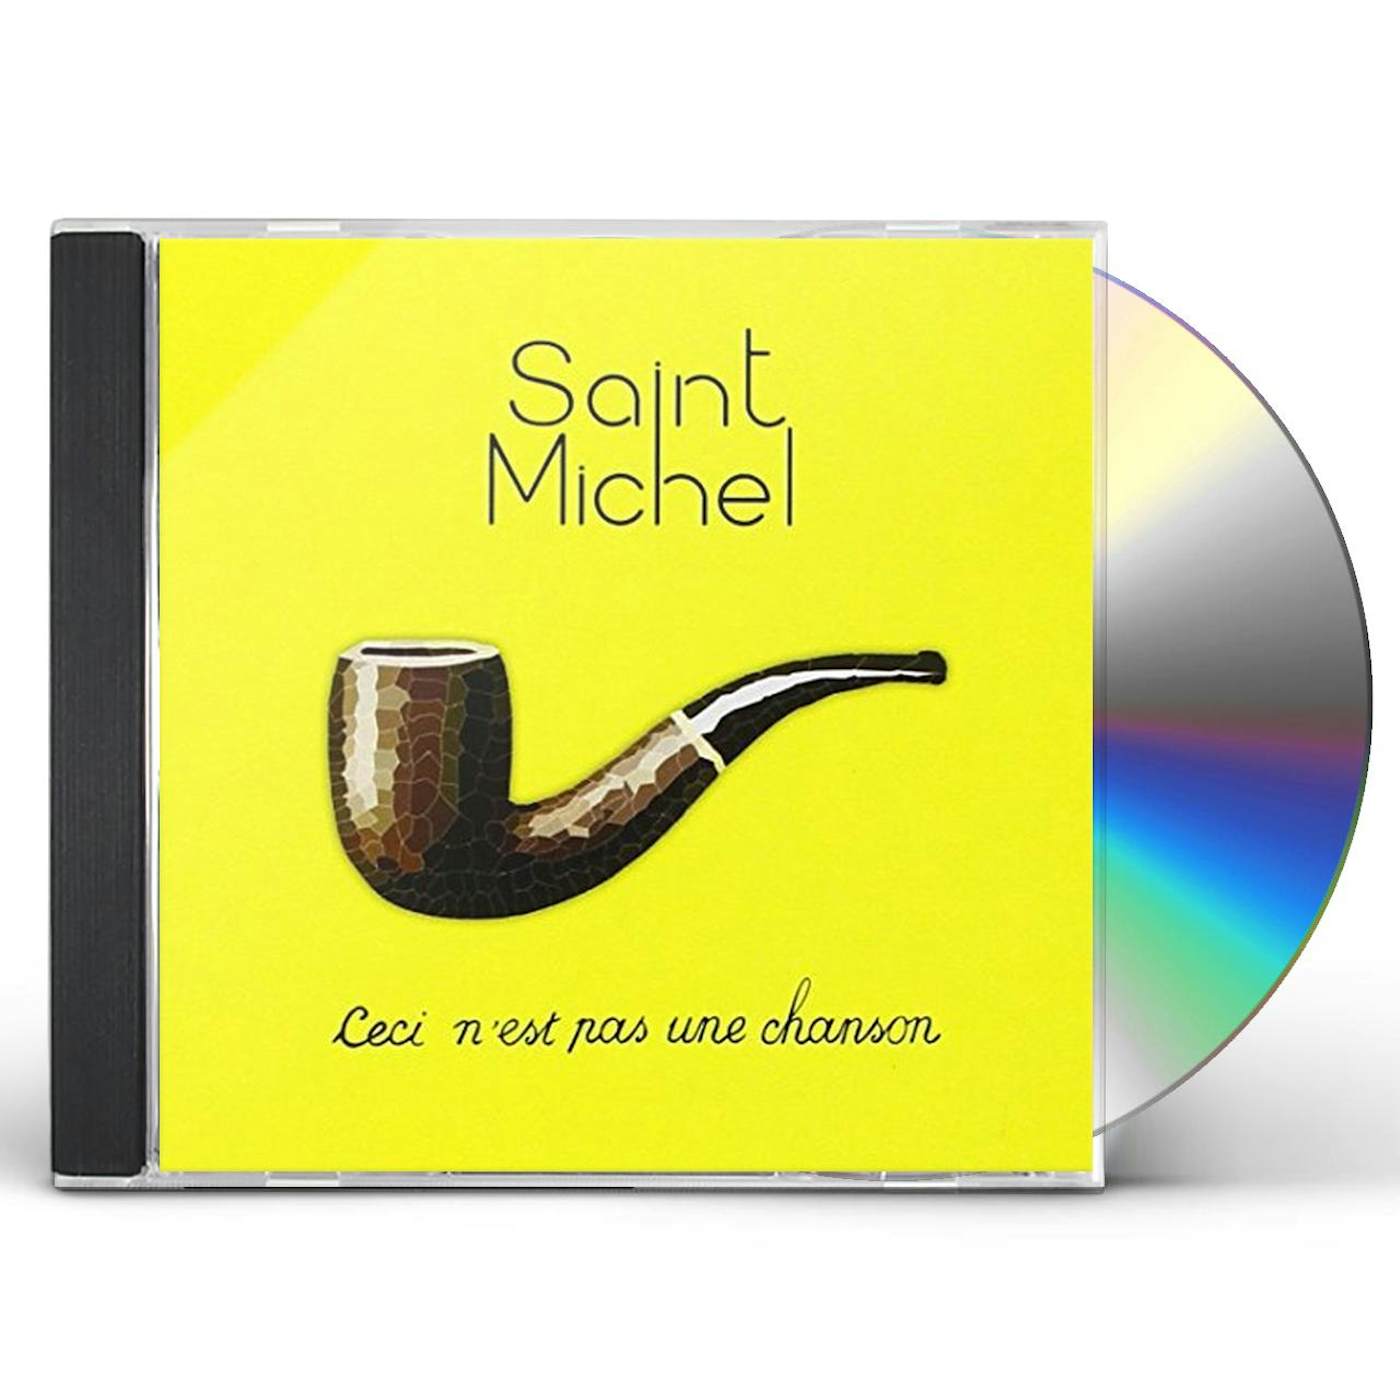 Saint Michel CECI N'EST PAS UNE CHANSON CD